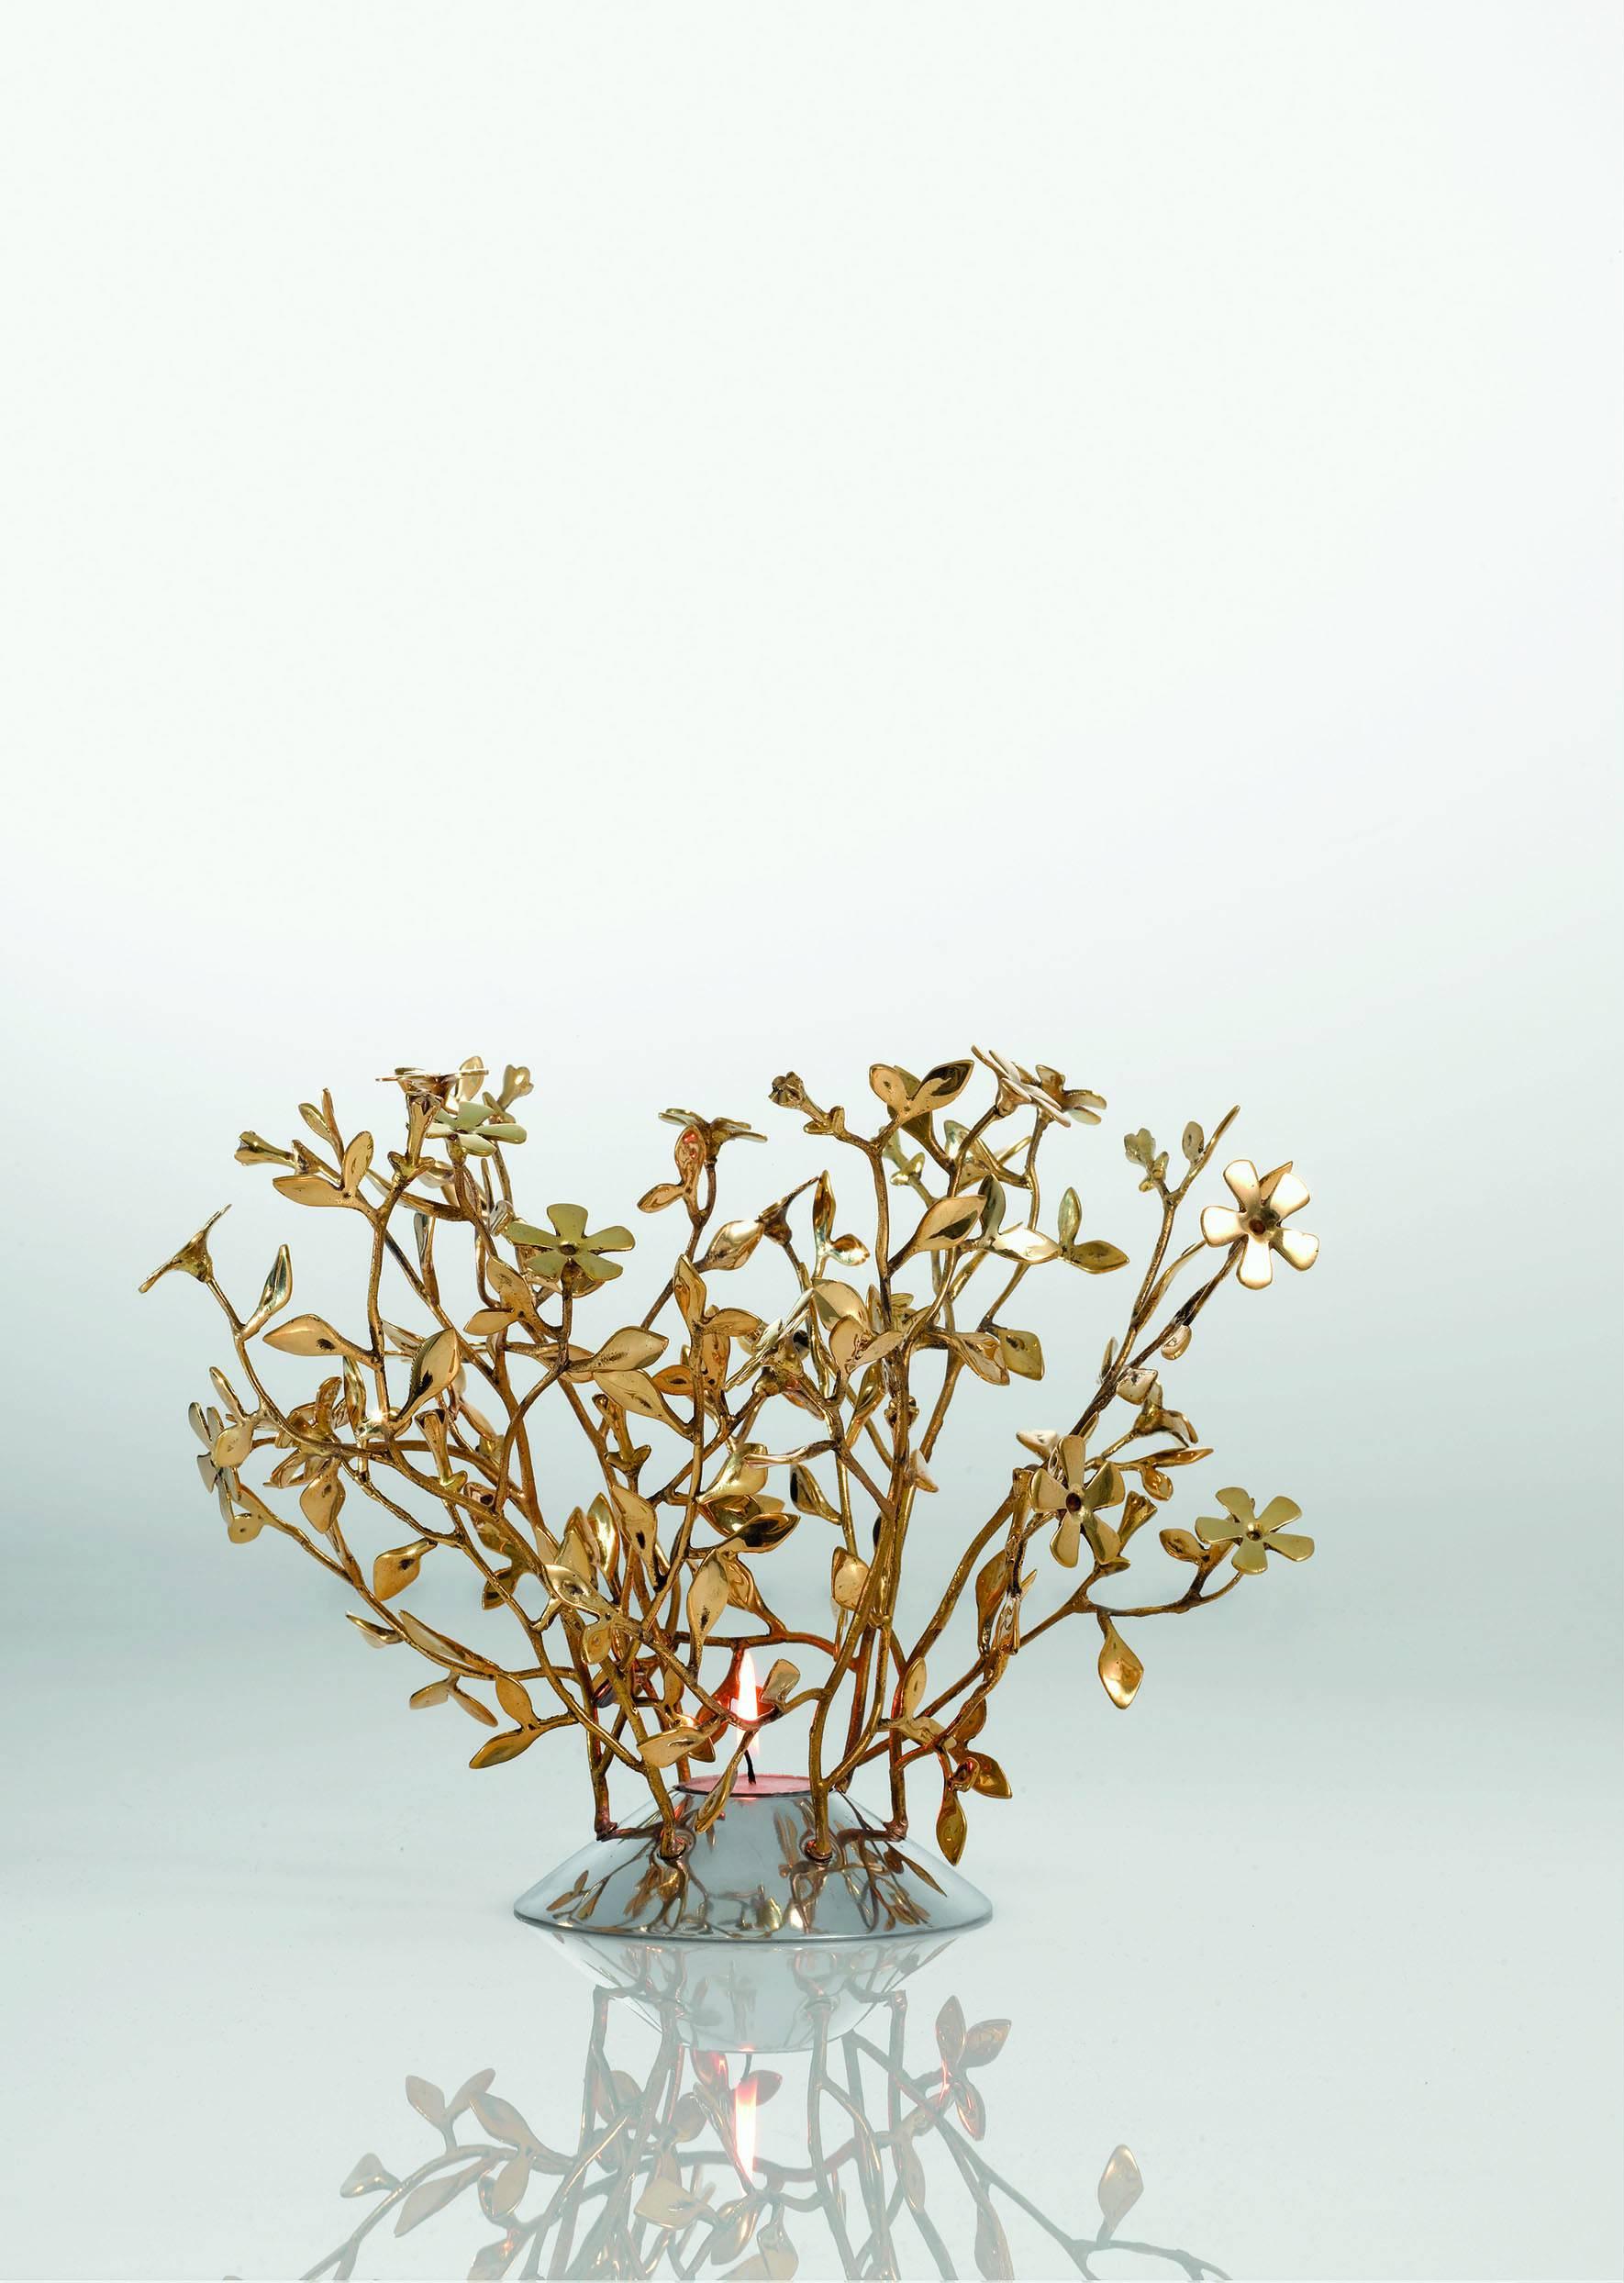 Ein Arrangement aus Blumen oder Blättern, die mit kleinen Zweigen zusammengebunden werden. Dies sind die kostbaren, schalenförmigen Tafelaufsätze, die Mann Singh aus versilbertem Messing geschaffen hat.

Mann Singh kommt von weit her, aus dem Land